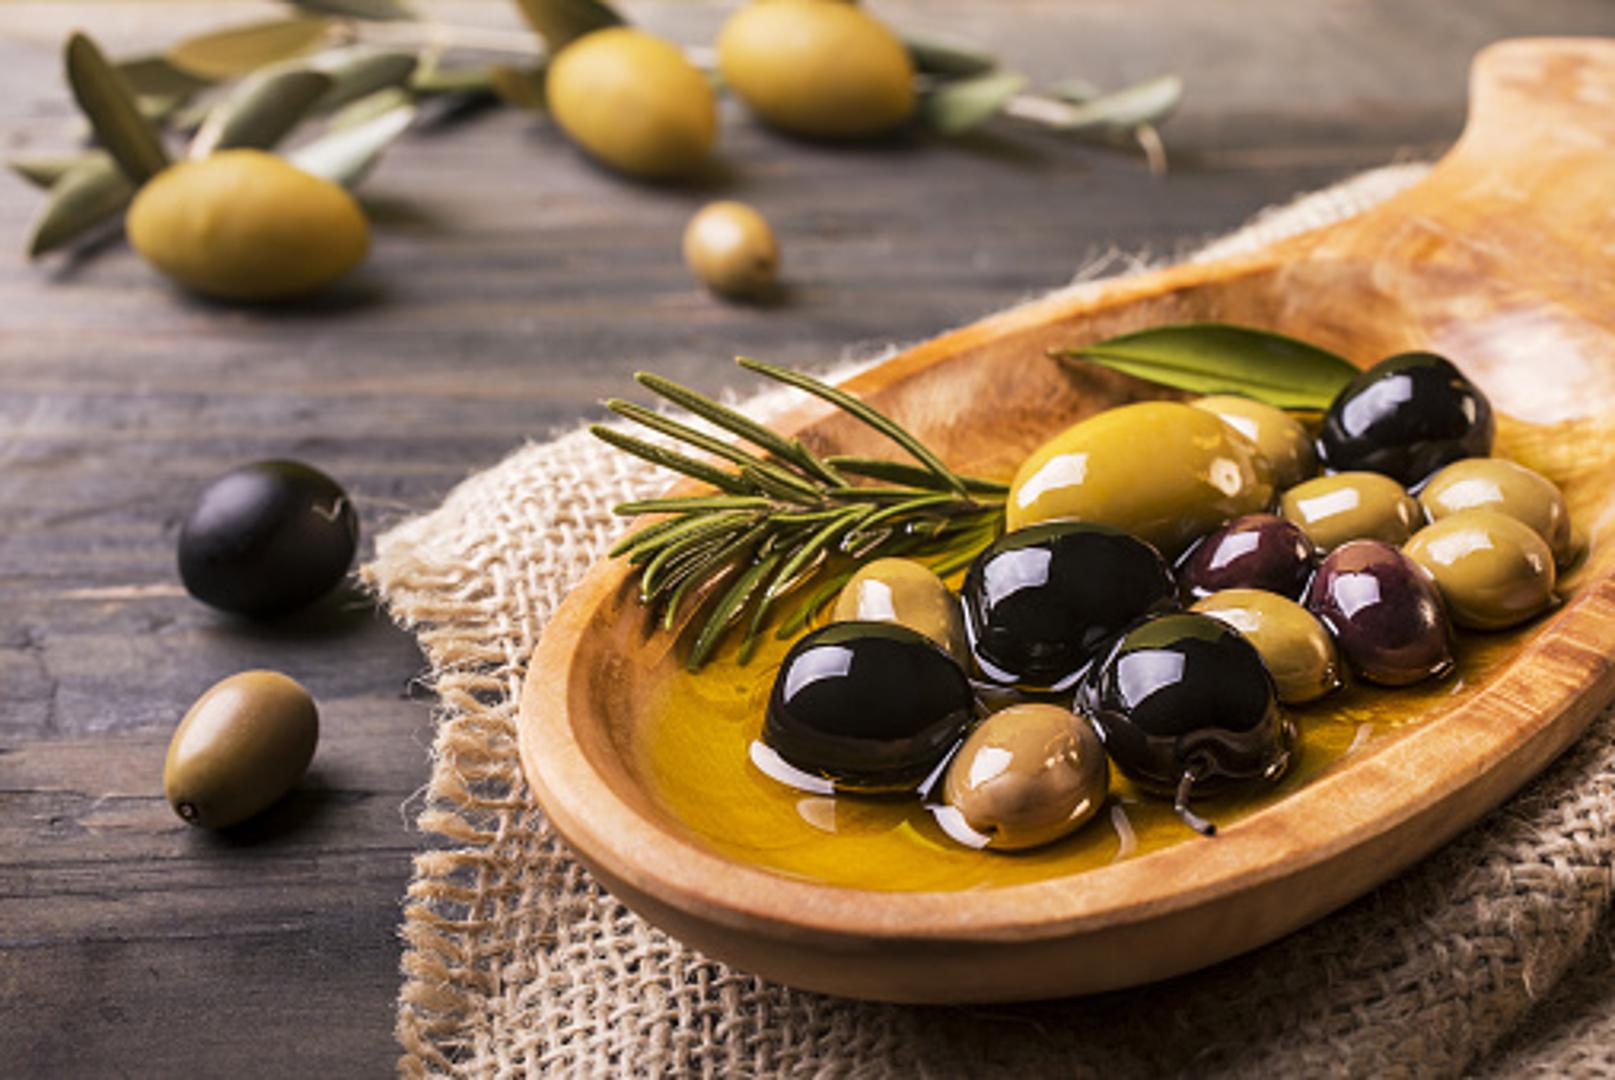 Antioksidansi i nutrijente iz maslina mogu djelovati na ublažavanje boli. Istraživanja su pokazala da 50 ml djevičanskog maslinovog ulja može djelovati kao desetina doze ibuprofena za odrasle.